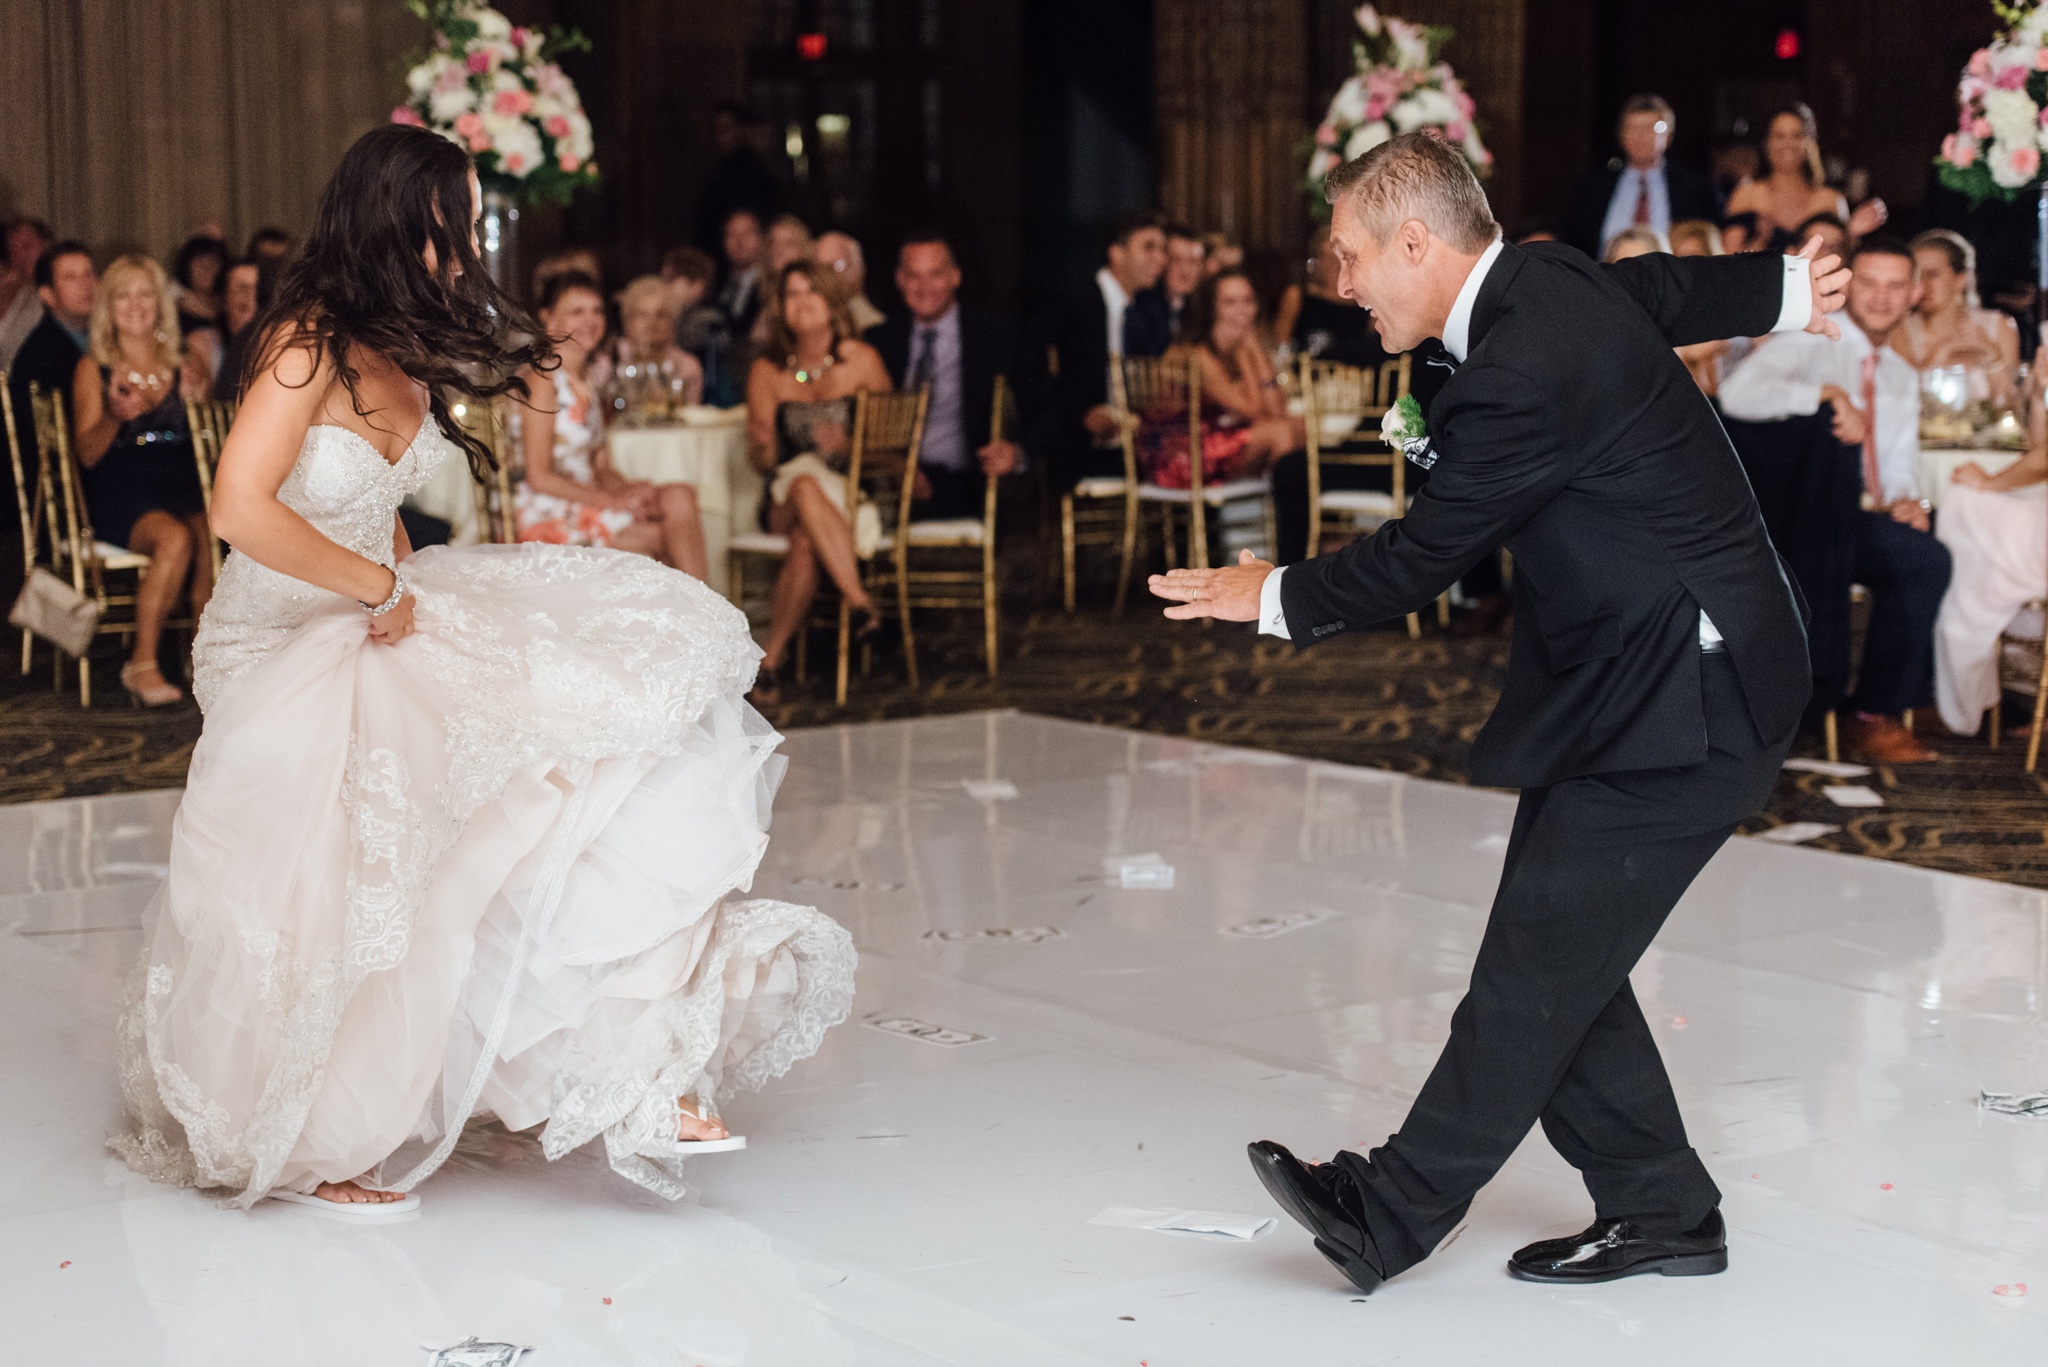 Stephanie + Justin - Crystal Tea Room - Philadelphia Wedding Photographer - Alison Dunn Photography photo